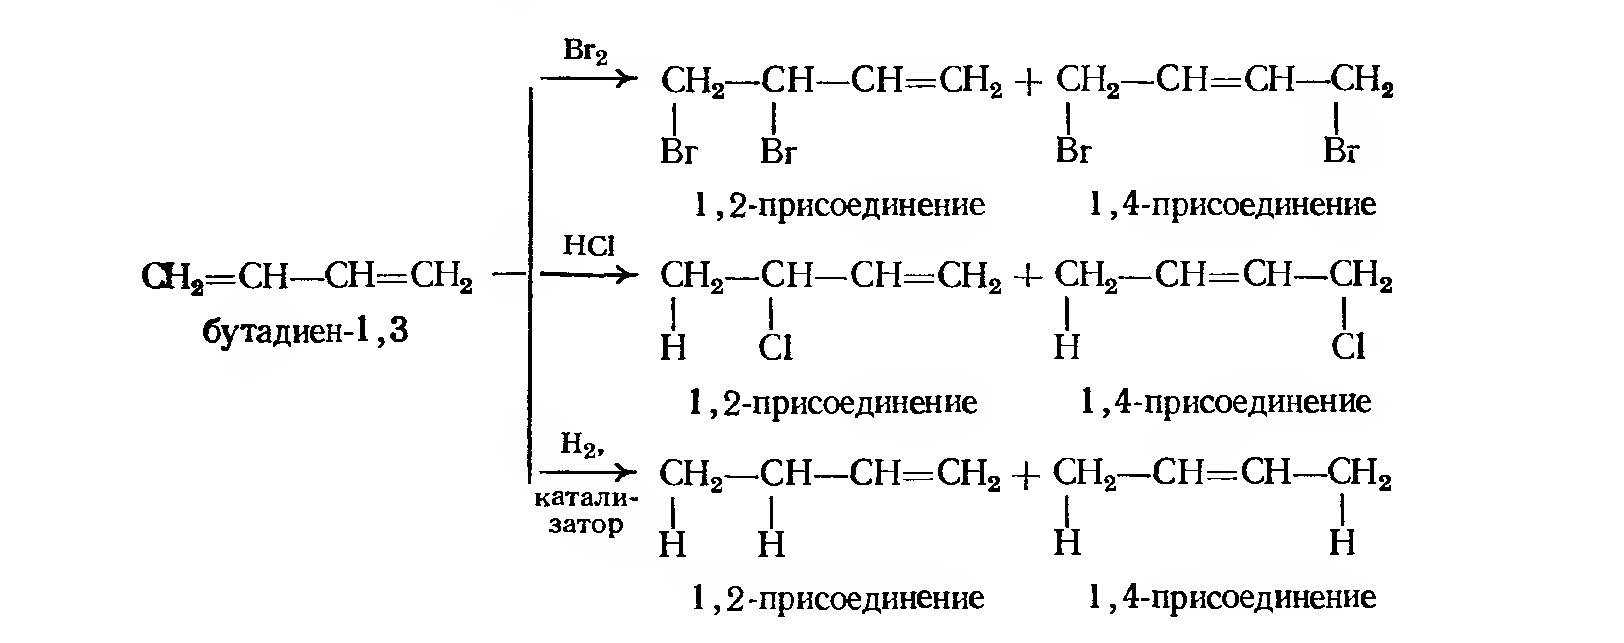 Бутадиен 1 3 реакции присоединения. Схема полимеризации хлоропрена. Присоединение hbr к бутадиену 1,3. Гидробромирование бутадиена-1.3. Бутадиен 13 и бромоводород.